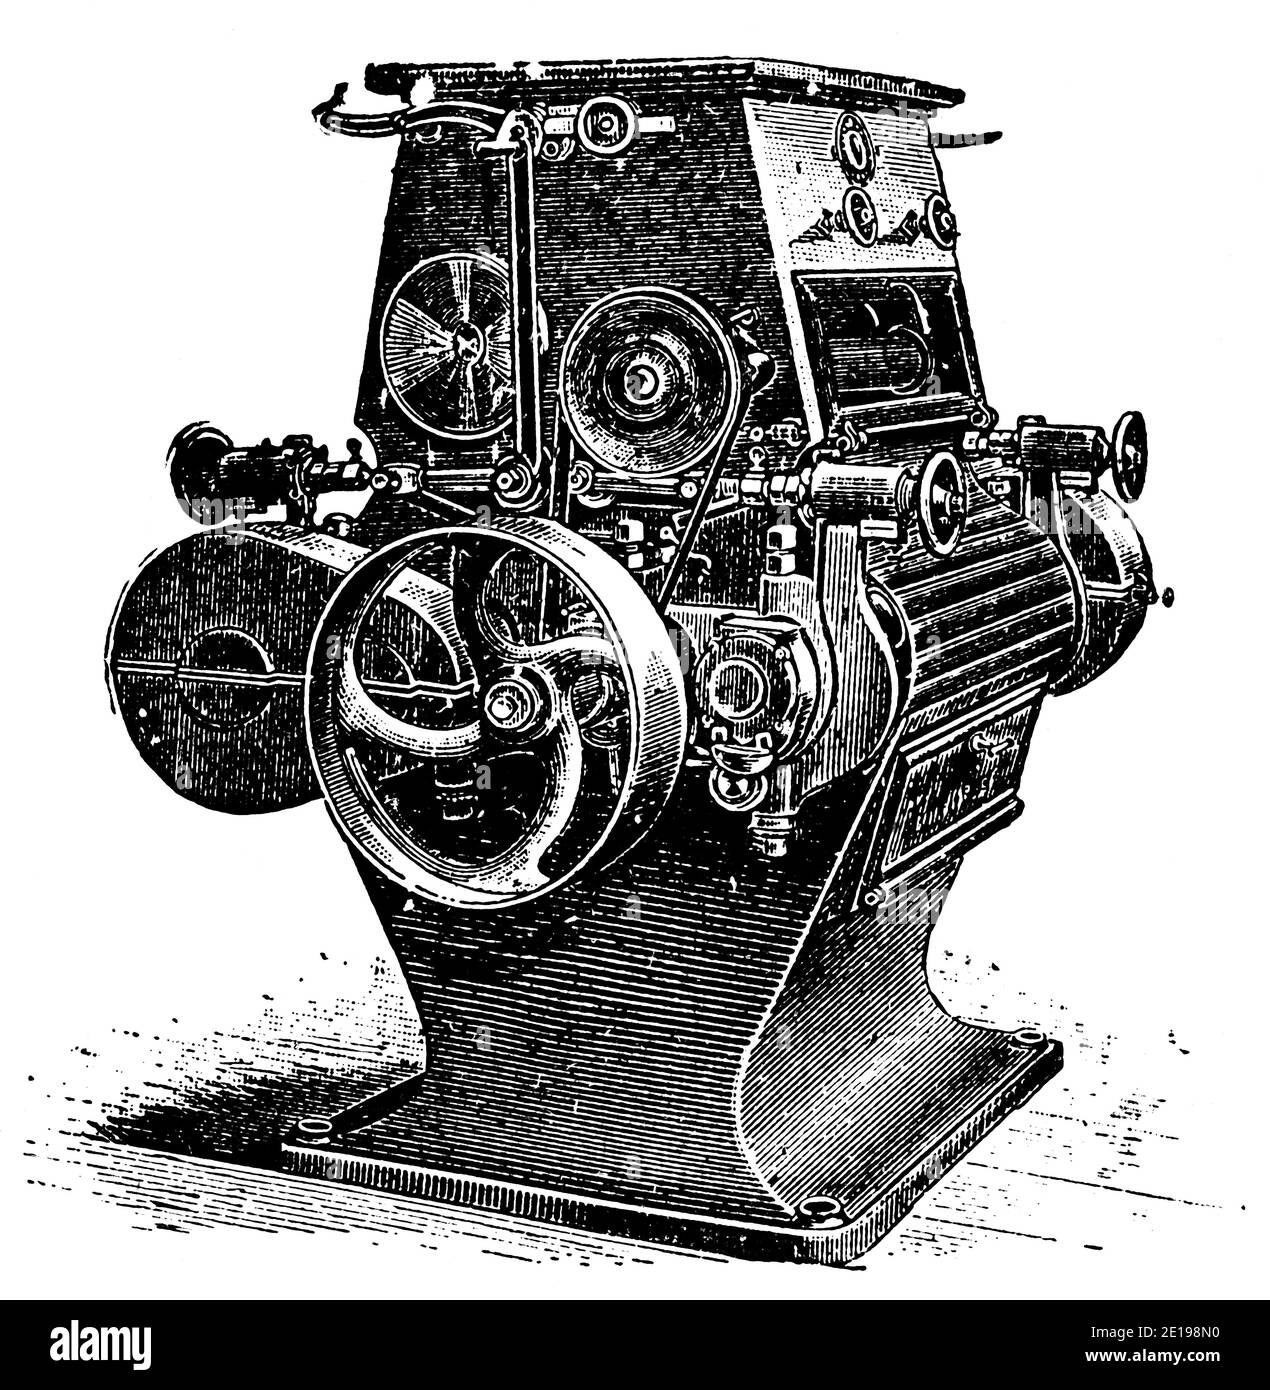 Industrielle elektrische Mühle, Modell 1894. Illustration des 19. Jahrhunderts. Deutschland. Weißer Hintergrund. Stockfoto